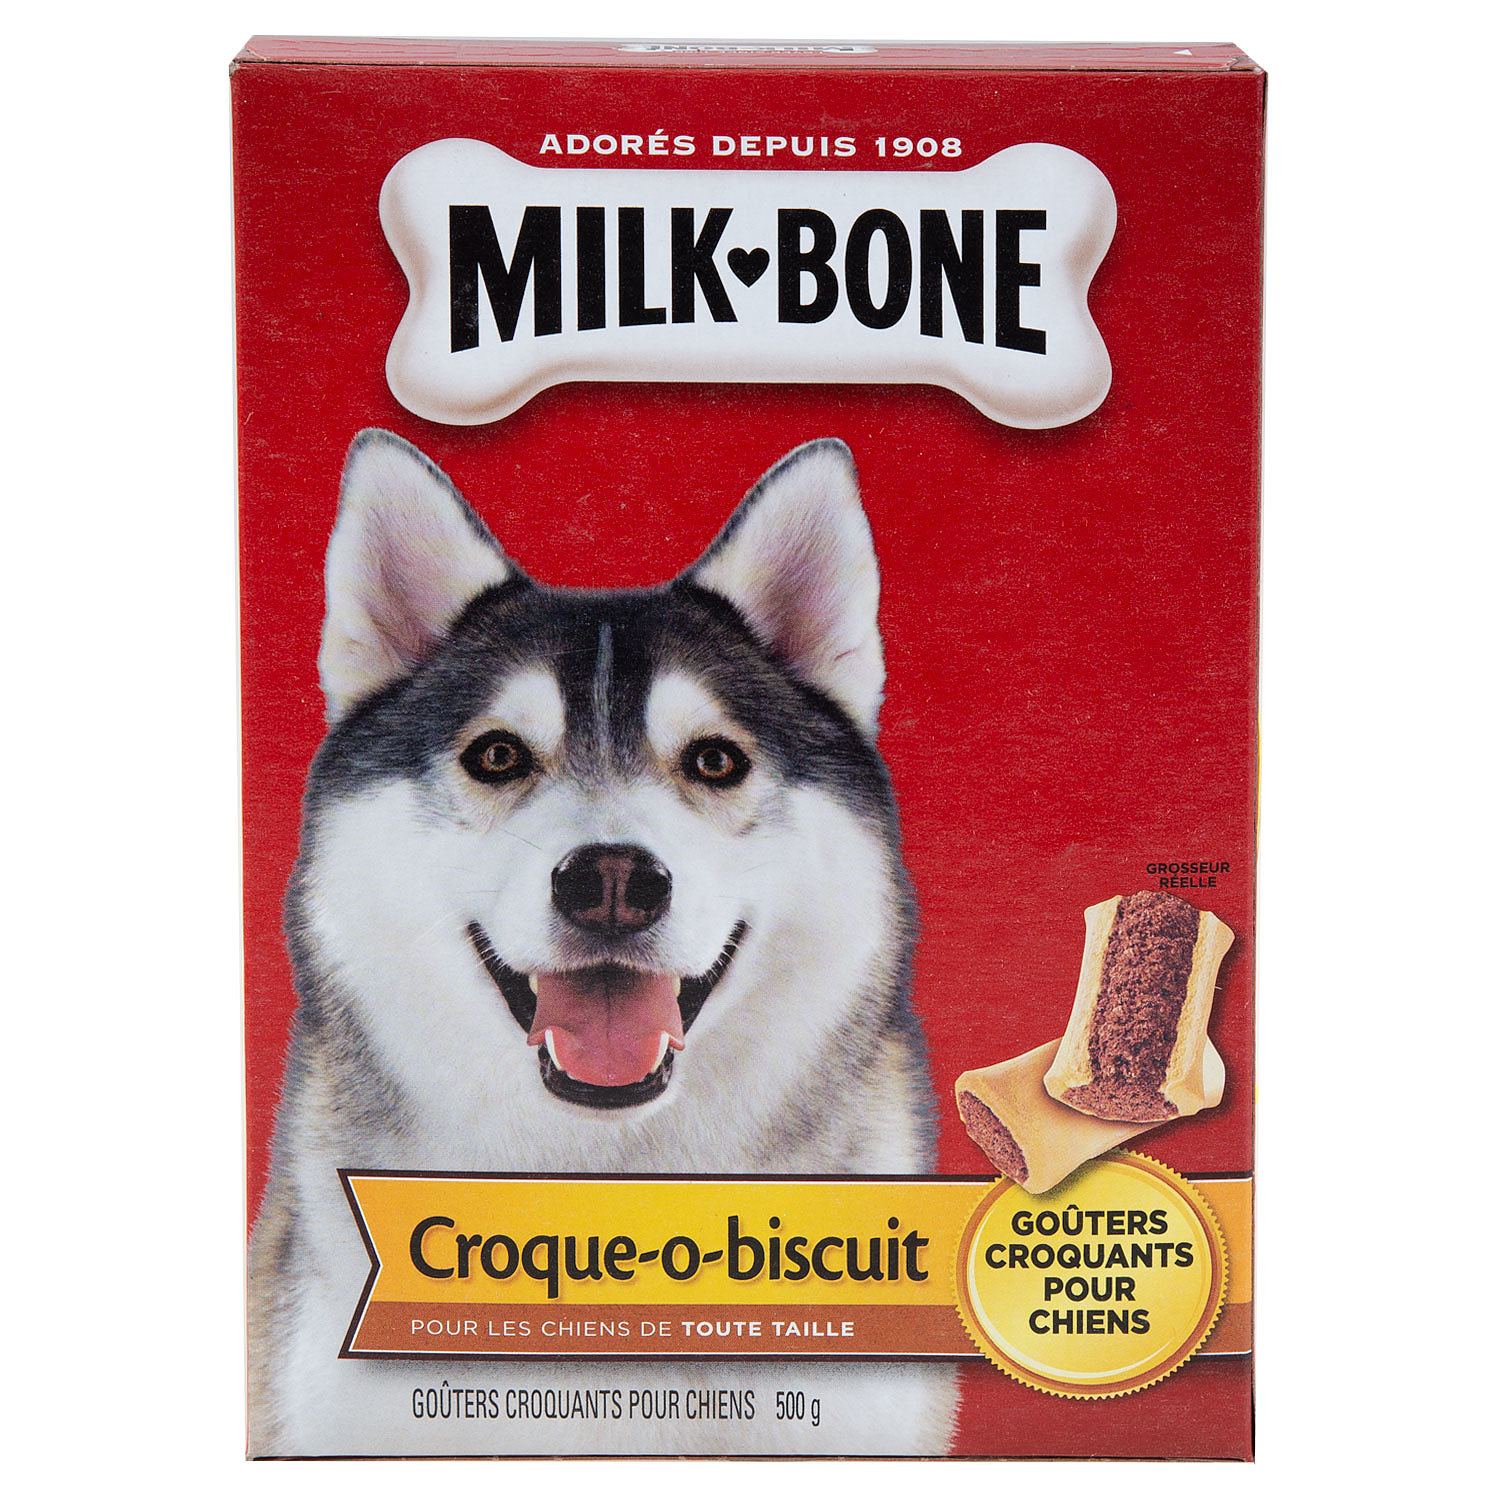 Milk Bone - Croque-o-biscuit, goûters croquants pour chiens, 500g